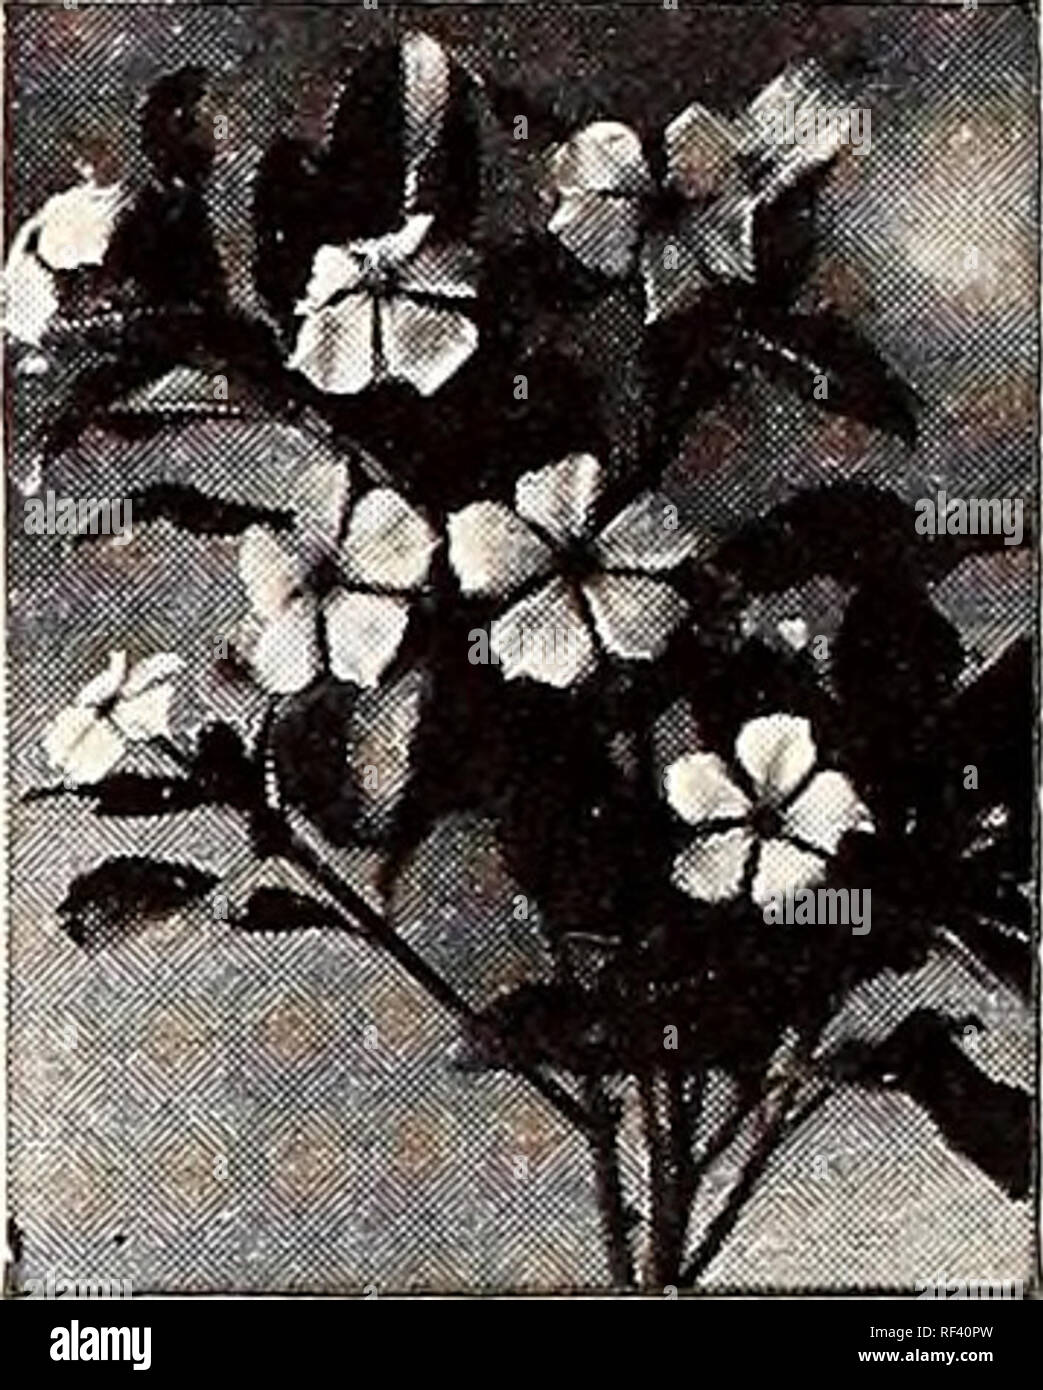 . Katalog 1946: Magnolia Samen sind gut Samen.. Samen Kataloge Kataloge; Gemüse; Blumen; Pflanzen Kataloge Kataloge; Gartengeräte und Zubehör Kataloge. ZINNIA - DAHLIA GEBLÜHT (2y2 ft.) - Blüten sind 2 bis 4 Zoll über und werden besonders gerne für Ihre etwas Hol-folgten Blütenblätter, die Lose platziert sind.. Vinca Rosea rLw Tithonia Speciosa ZIN NI A-LILLIPUT (12 in.) (Siehe Rückseite Abbildung.) - Produziert eine Fülle von Blumen ca. 1 in. Durchmesser, sehr beliebt für Blumensträuße. Lachs JUWEL JUWEL GOLDEM ROSEBUD WHITE GEM KANARISCHEN KLEINOD SCARLET EDELSTEIN PURPLE gem Pkt. 10 c Stockfoto